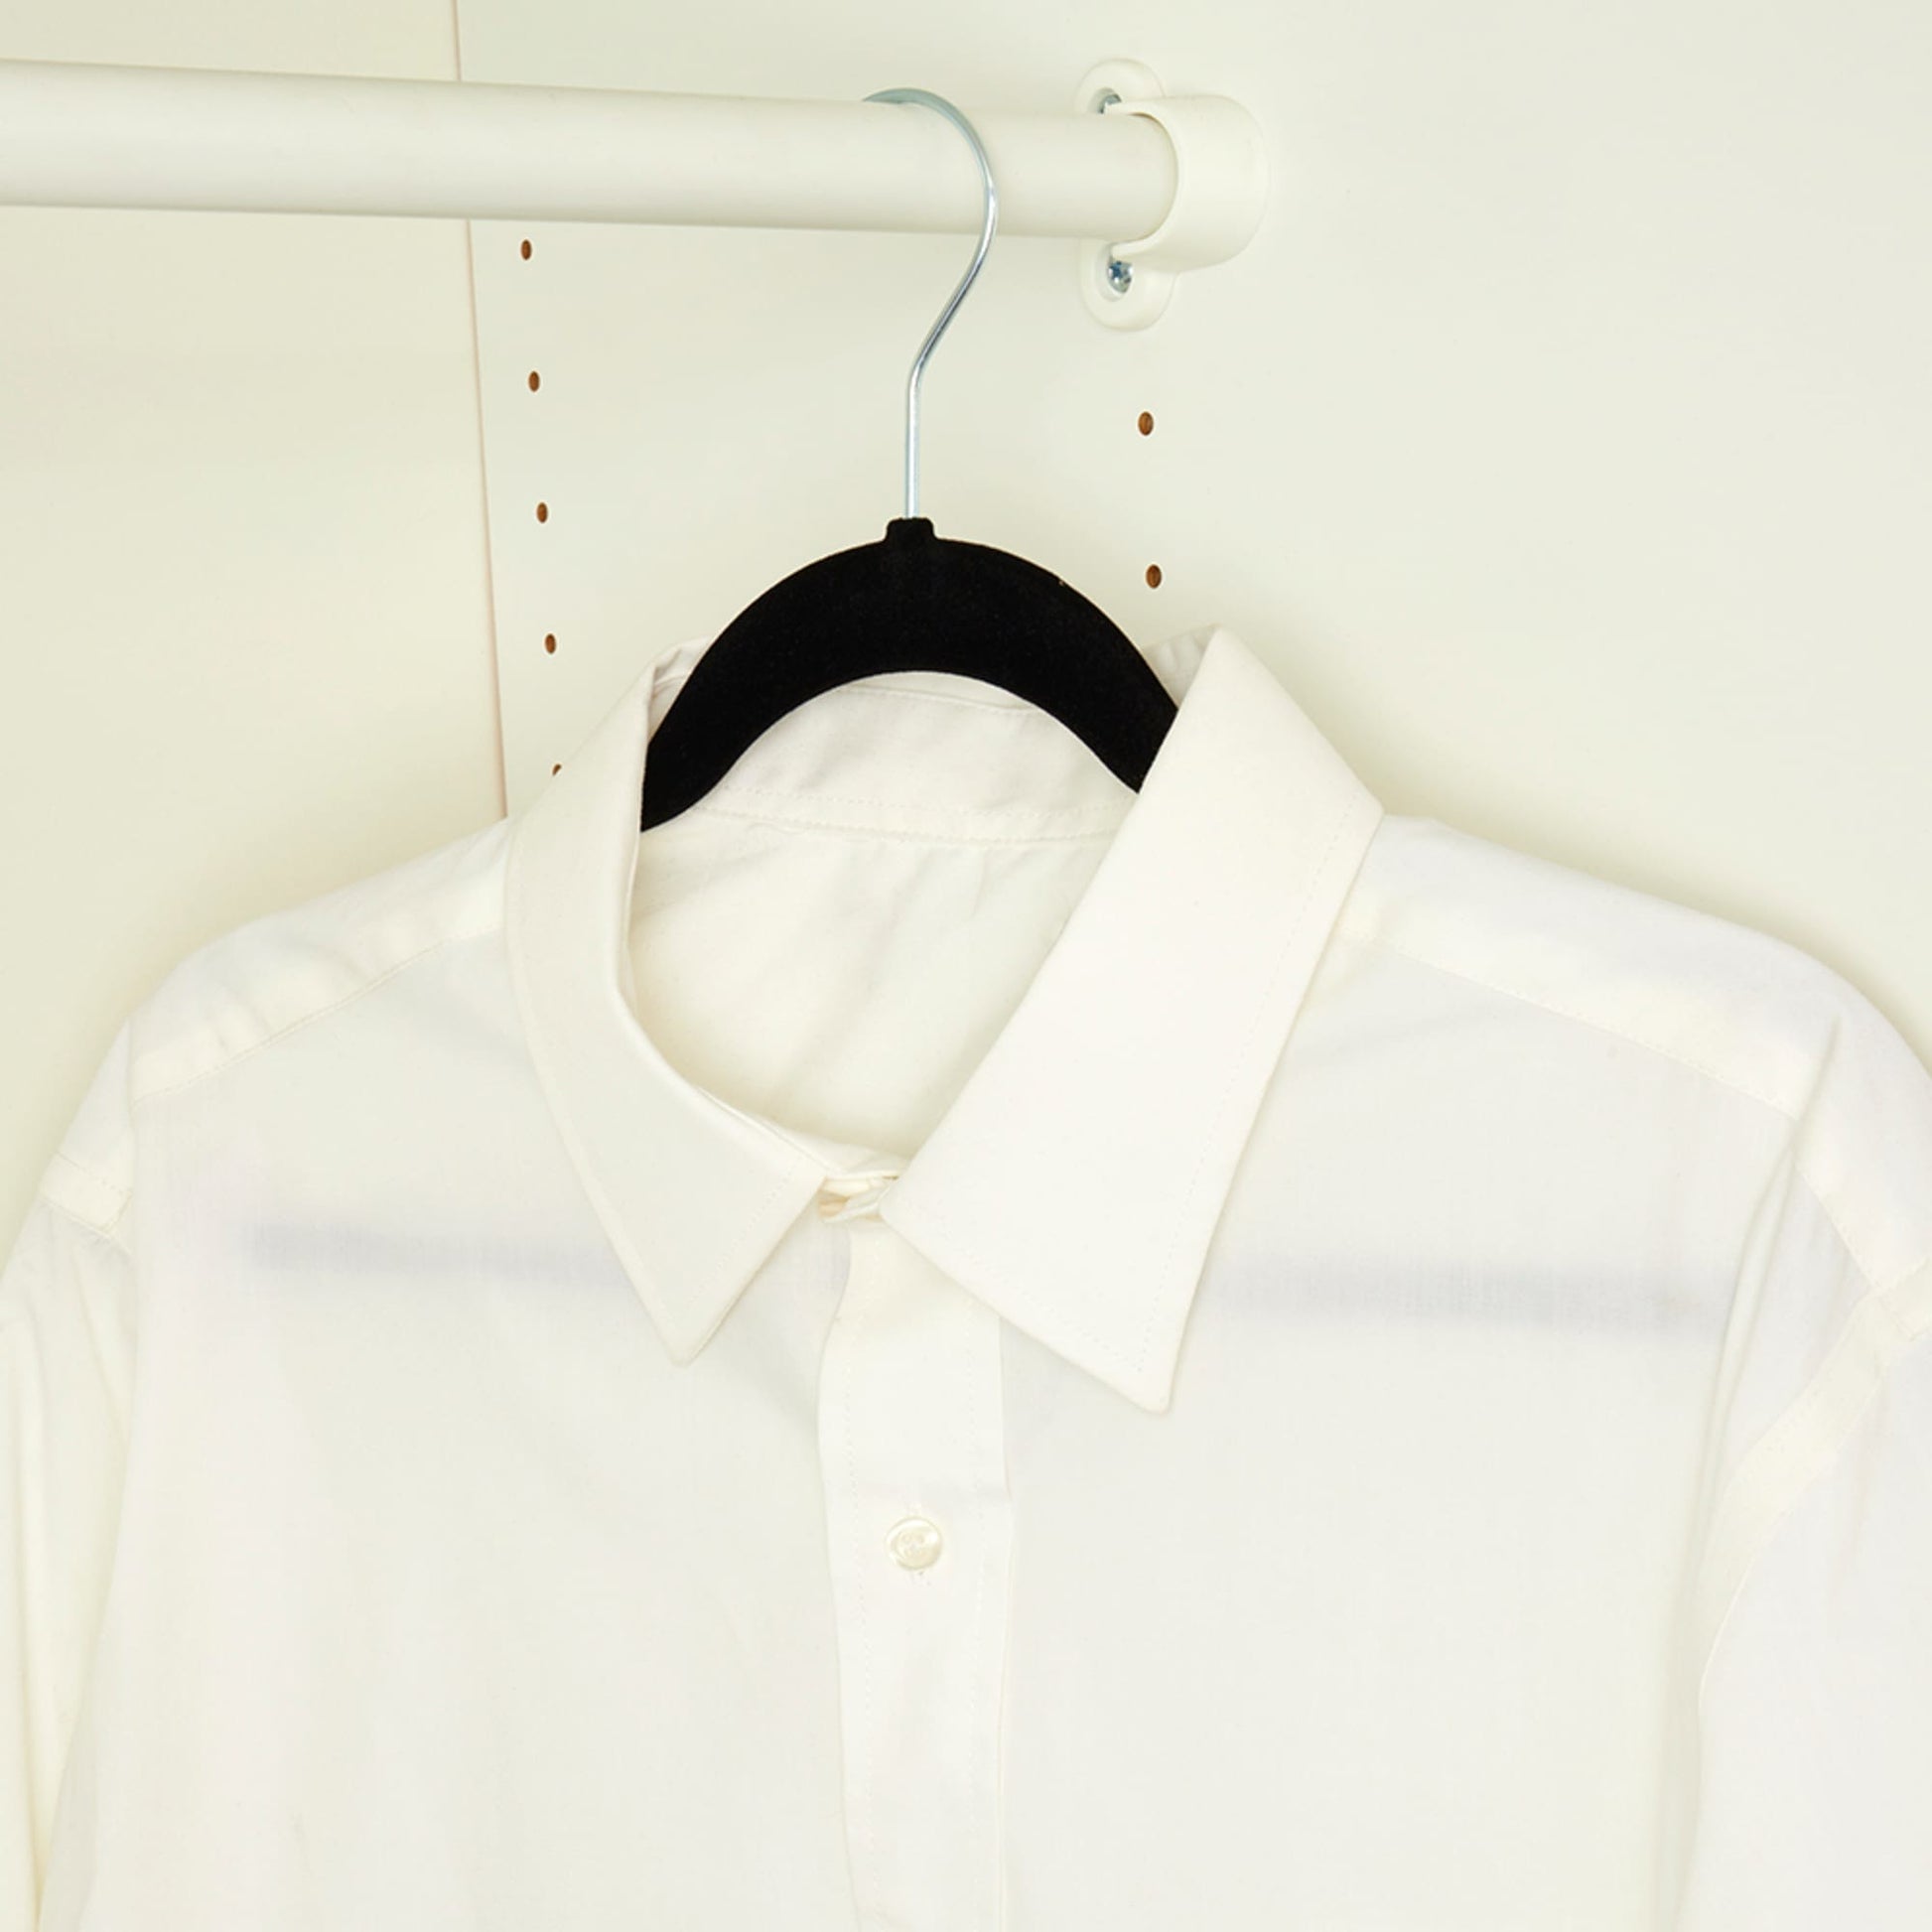 Home Basics Black Velvet Shirt Hangers 10-Pack FH01140 - The Home